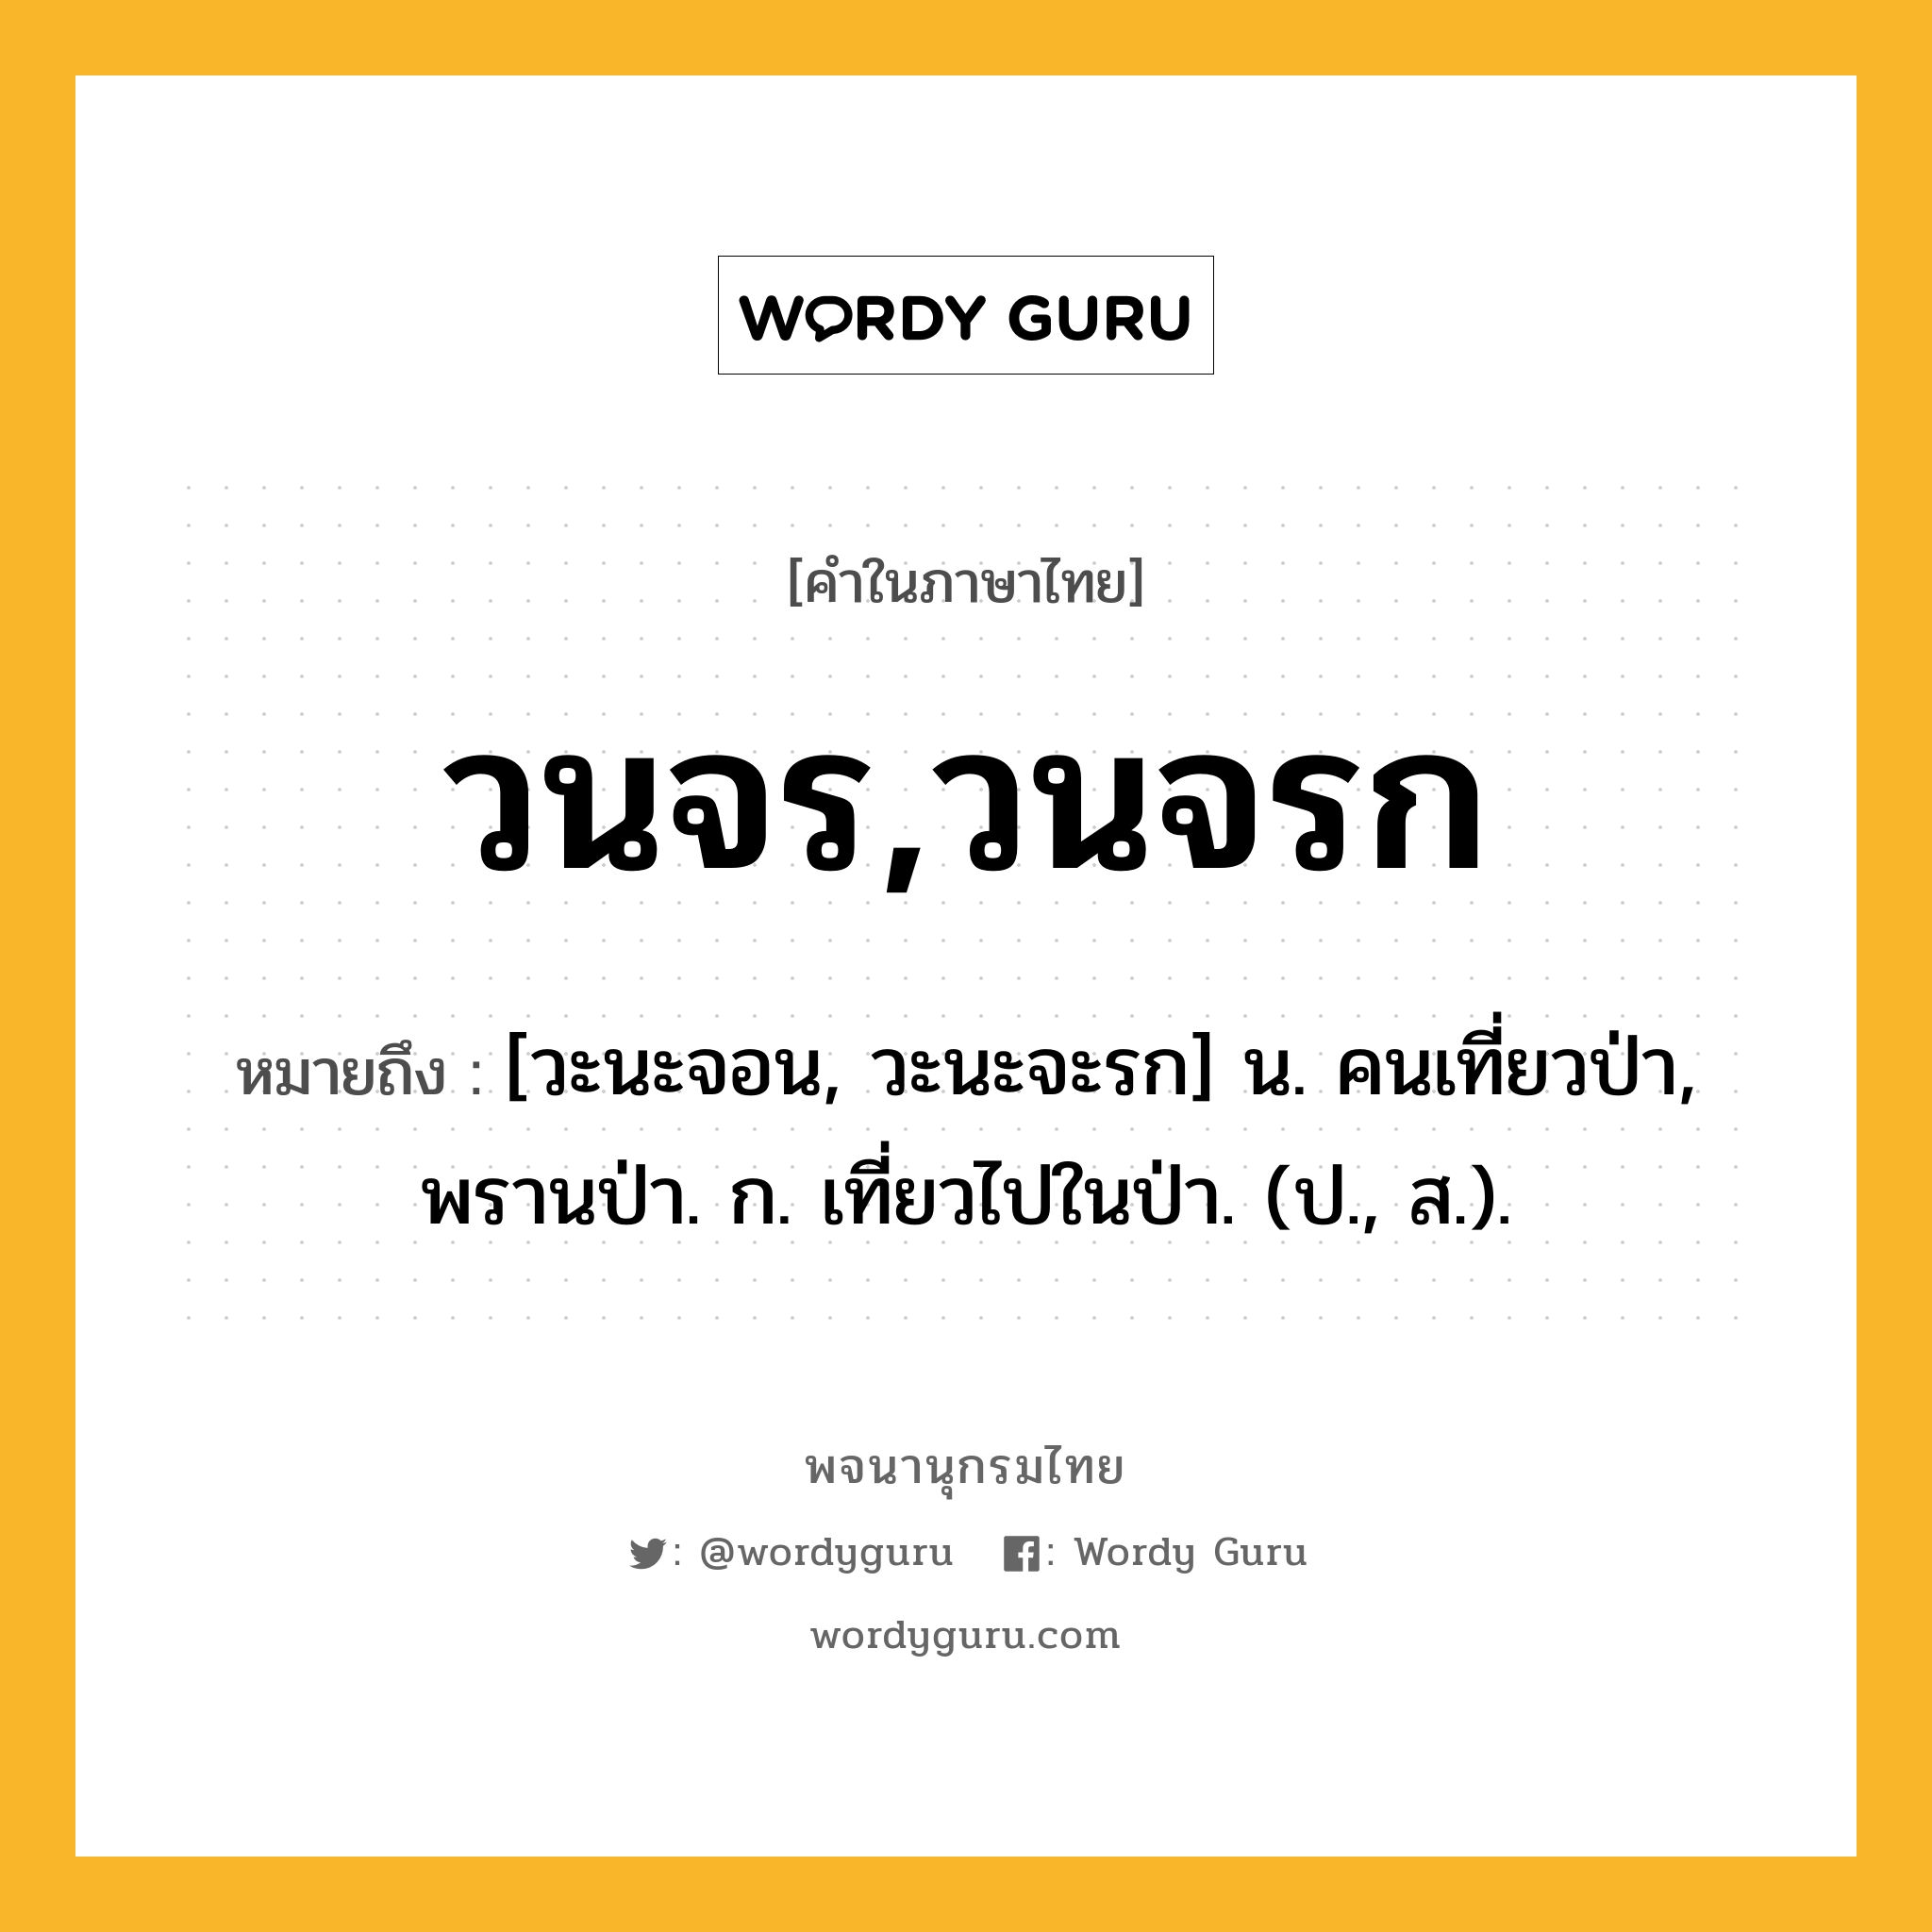 วนจร,วนจรก ความหมาย หมายถึงอะไร?, คำในภาษาไทย วนจร,วนจรก หมายถึง [วะนะจอน, วะนะจะรก] น. คนเที่ยวป่า, พรานป่า. ก. เที่ยวไปในป่า. (ป., ส.).